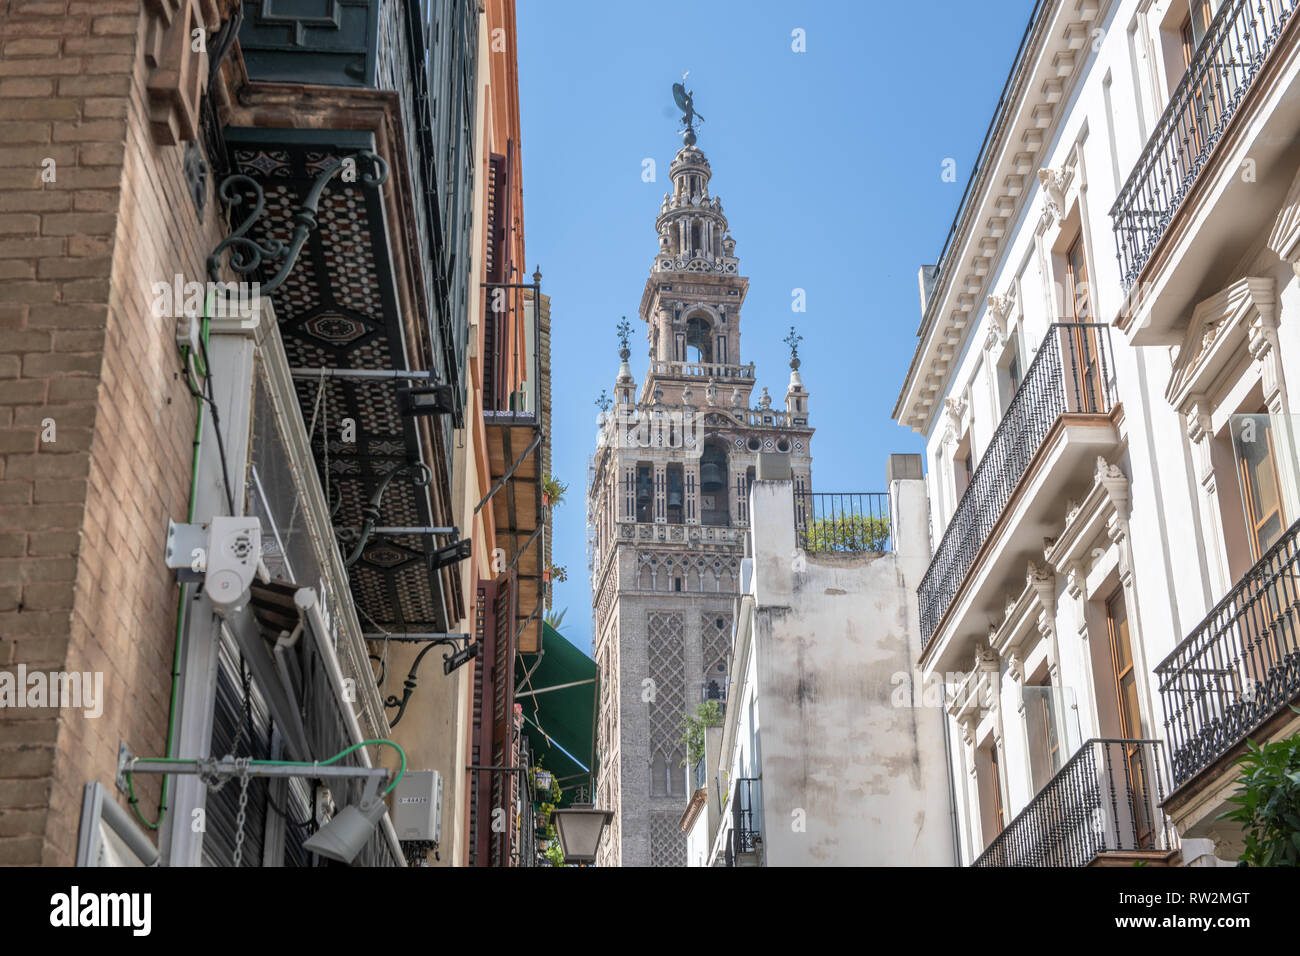 Ein Würmer aus der Sicht der Turm auf einer Kathedrale de Santa Mar'a de la Sede in Sevilla, Spanien Stockfoto